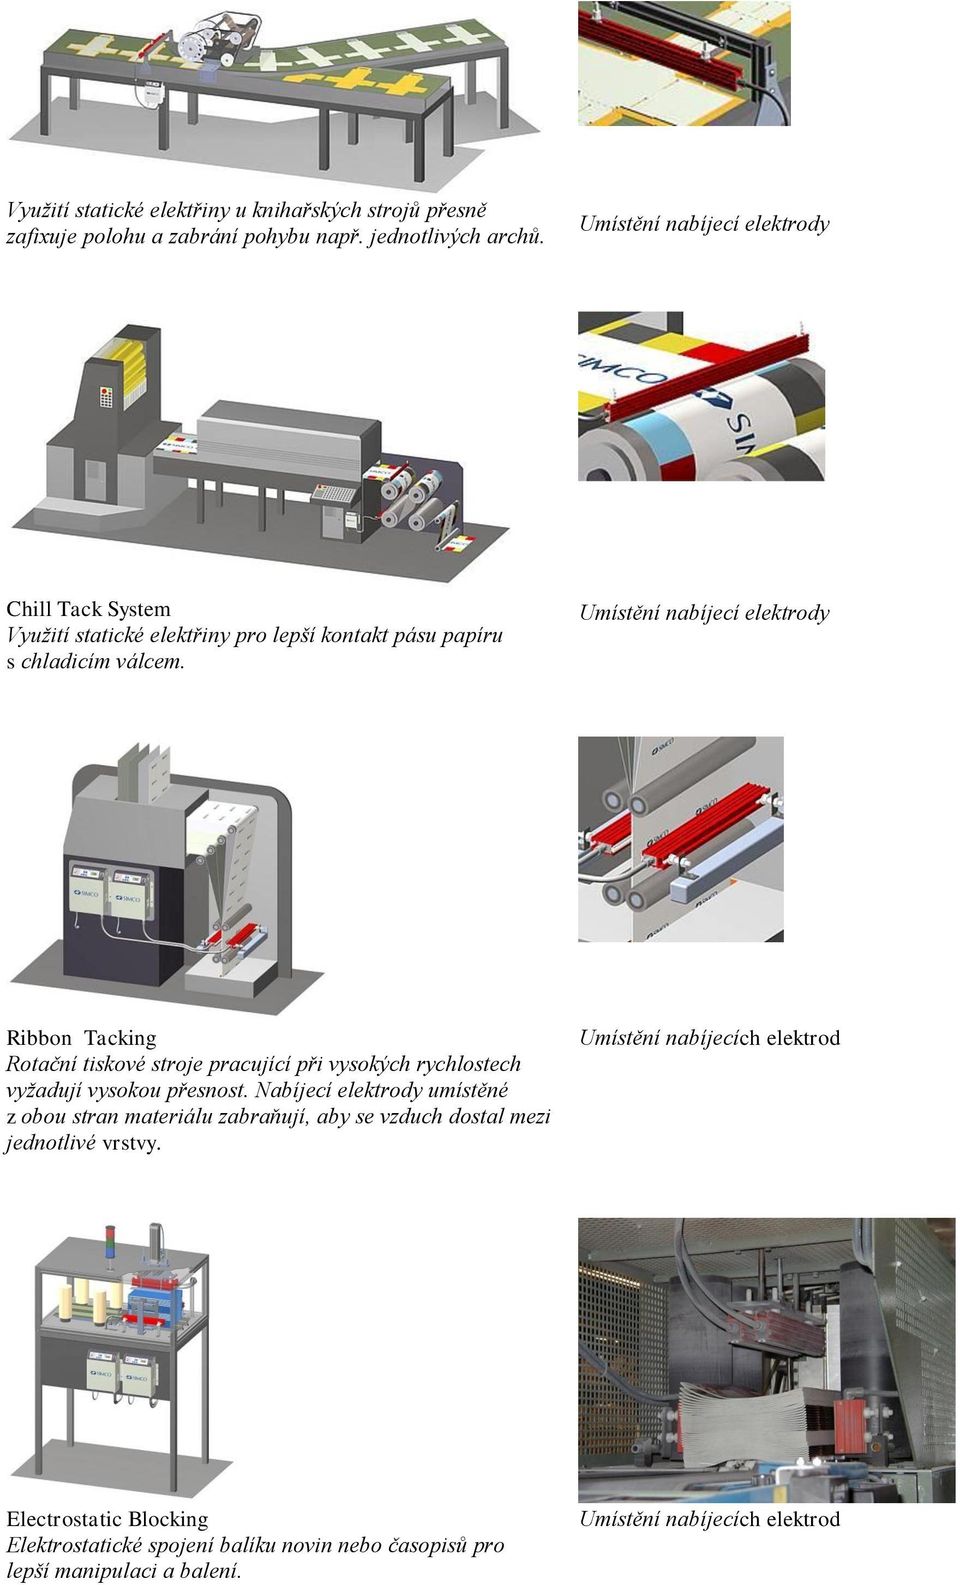 Ribbon Tacking Rotační tiskové stroje pracující při vysokých rychlostech vyžadují vysokou přesnost.